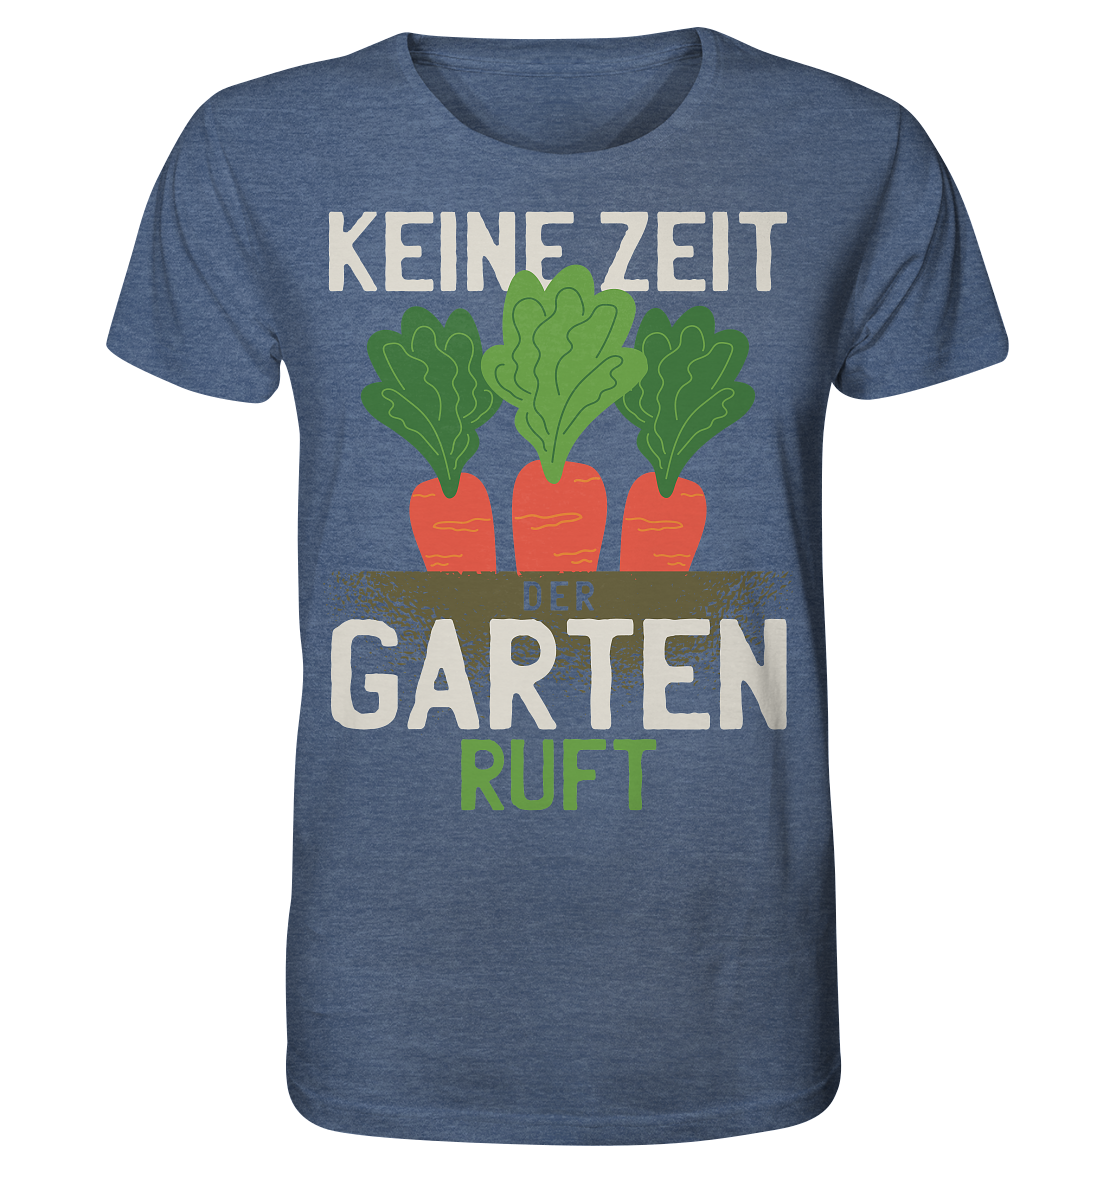 Keine Zeit der Garten ruft - Organic Shirt (meliert) - Online Kaufhaus München